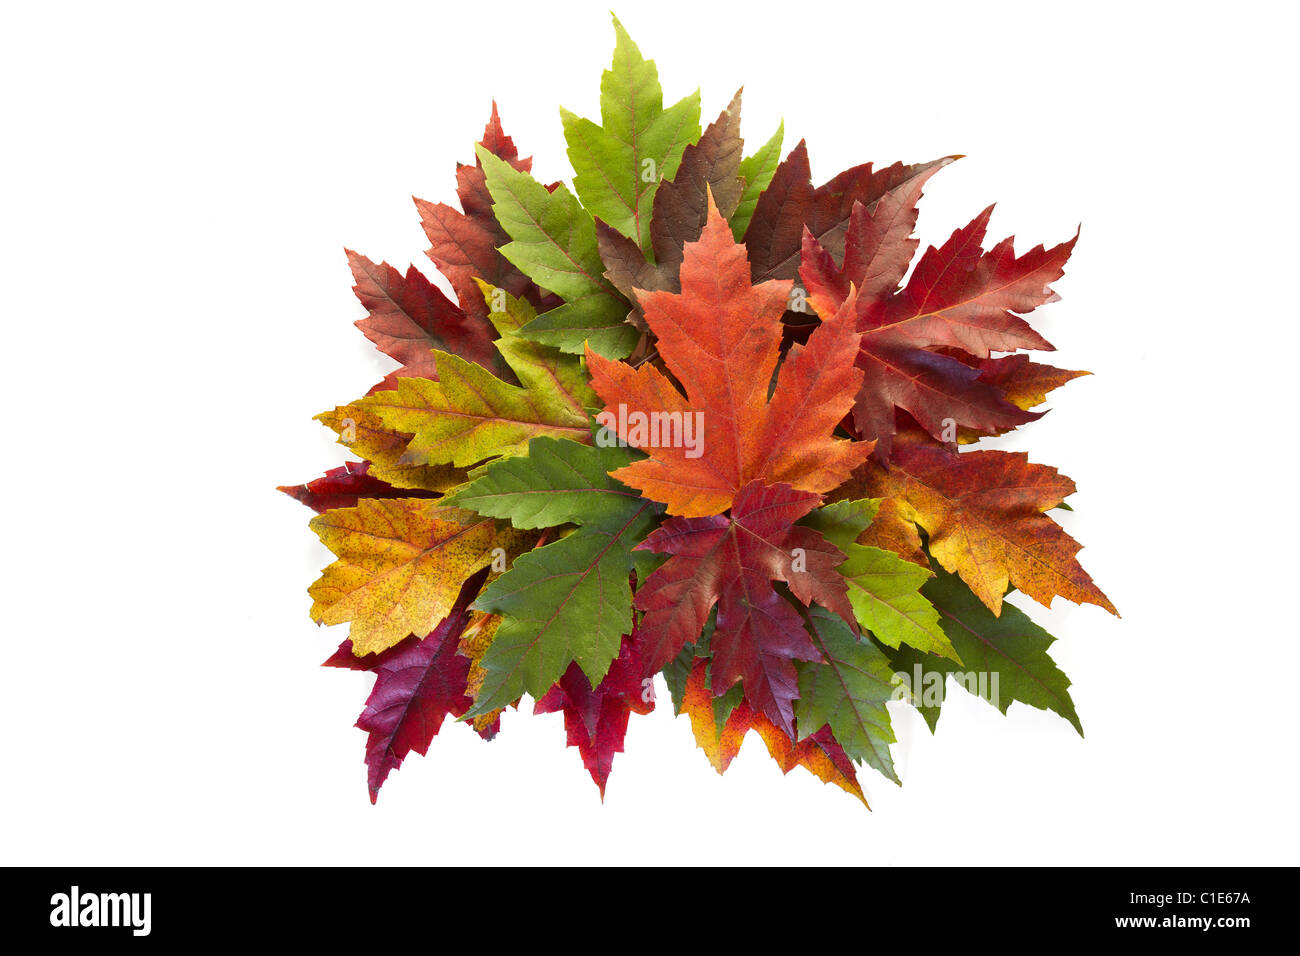 Ahornblätter gemischte Farben Herbst Herbstkranz auf weißem Hintergrund Stockfoto